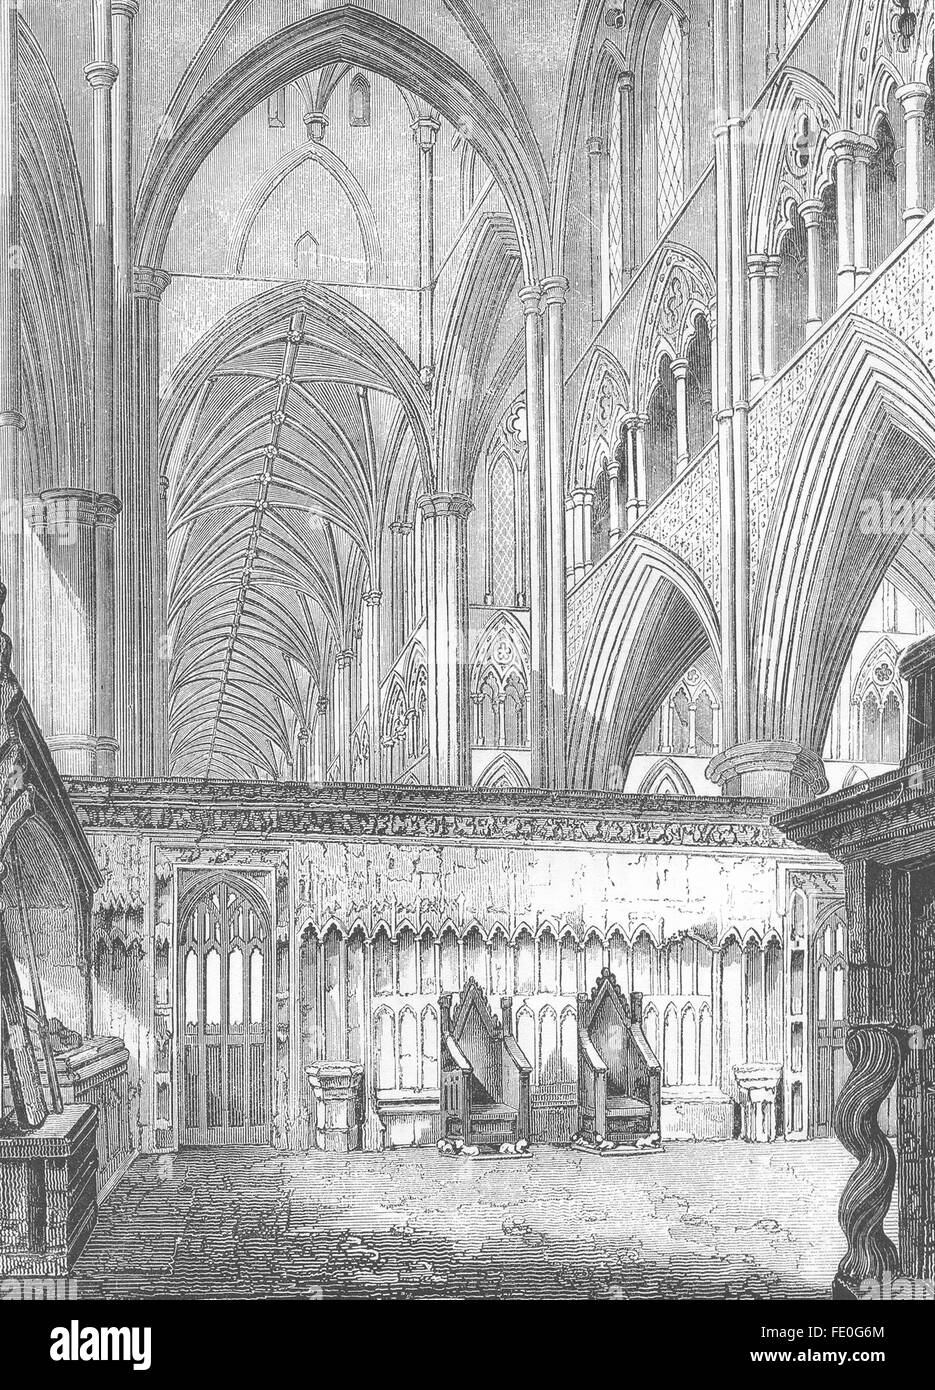 Londres : nef, l'abbaye de Westminster, à l'ouest de l'ancien, 1845 Banque D'Images